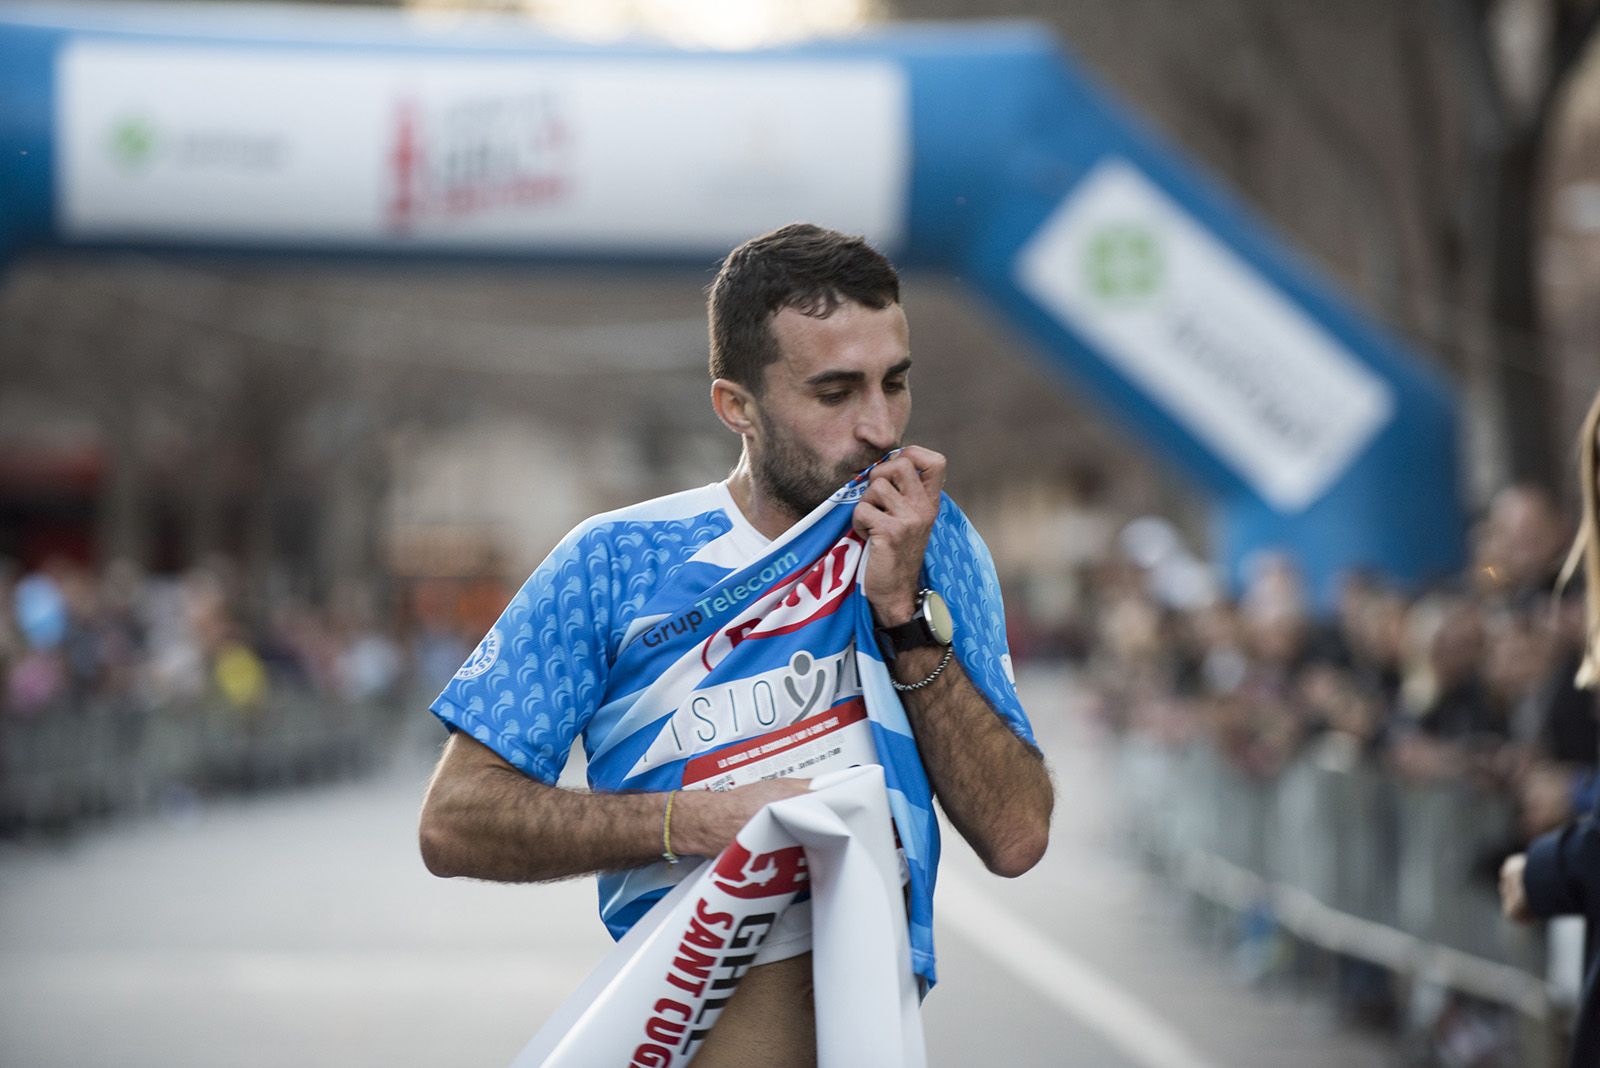 El guanyador, Pepe Diaz, de la Cursa del Gall de 5k. FOTO: Bernat Millet.